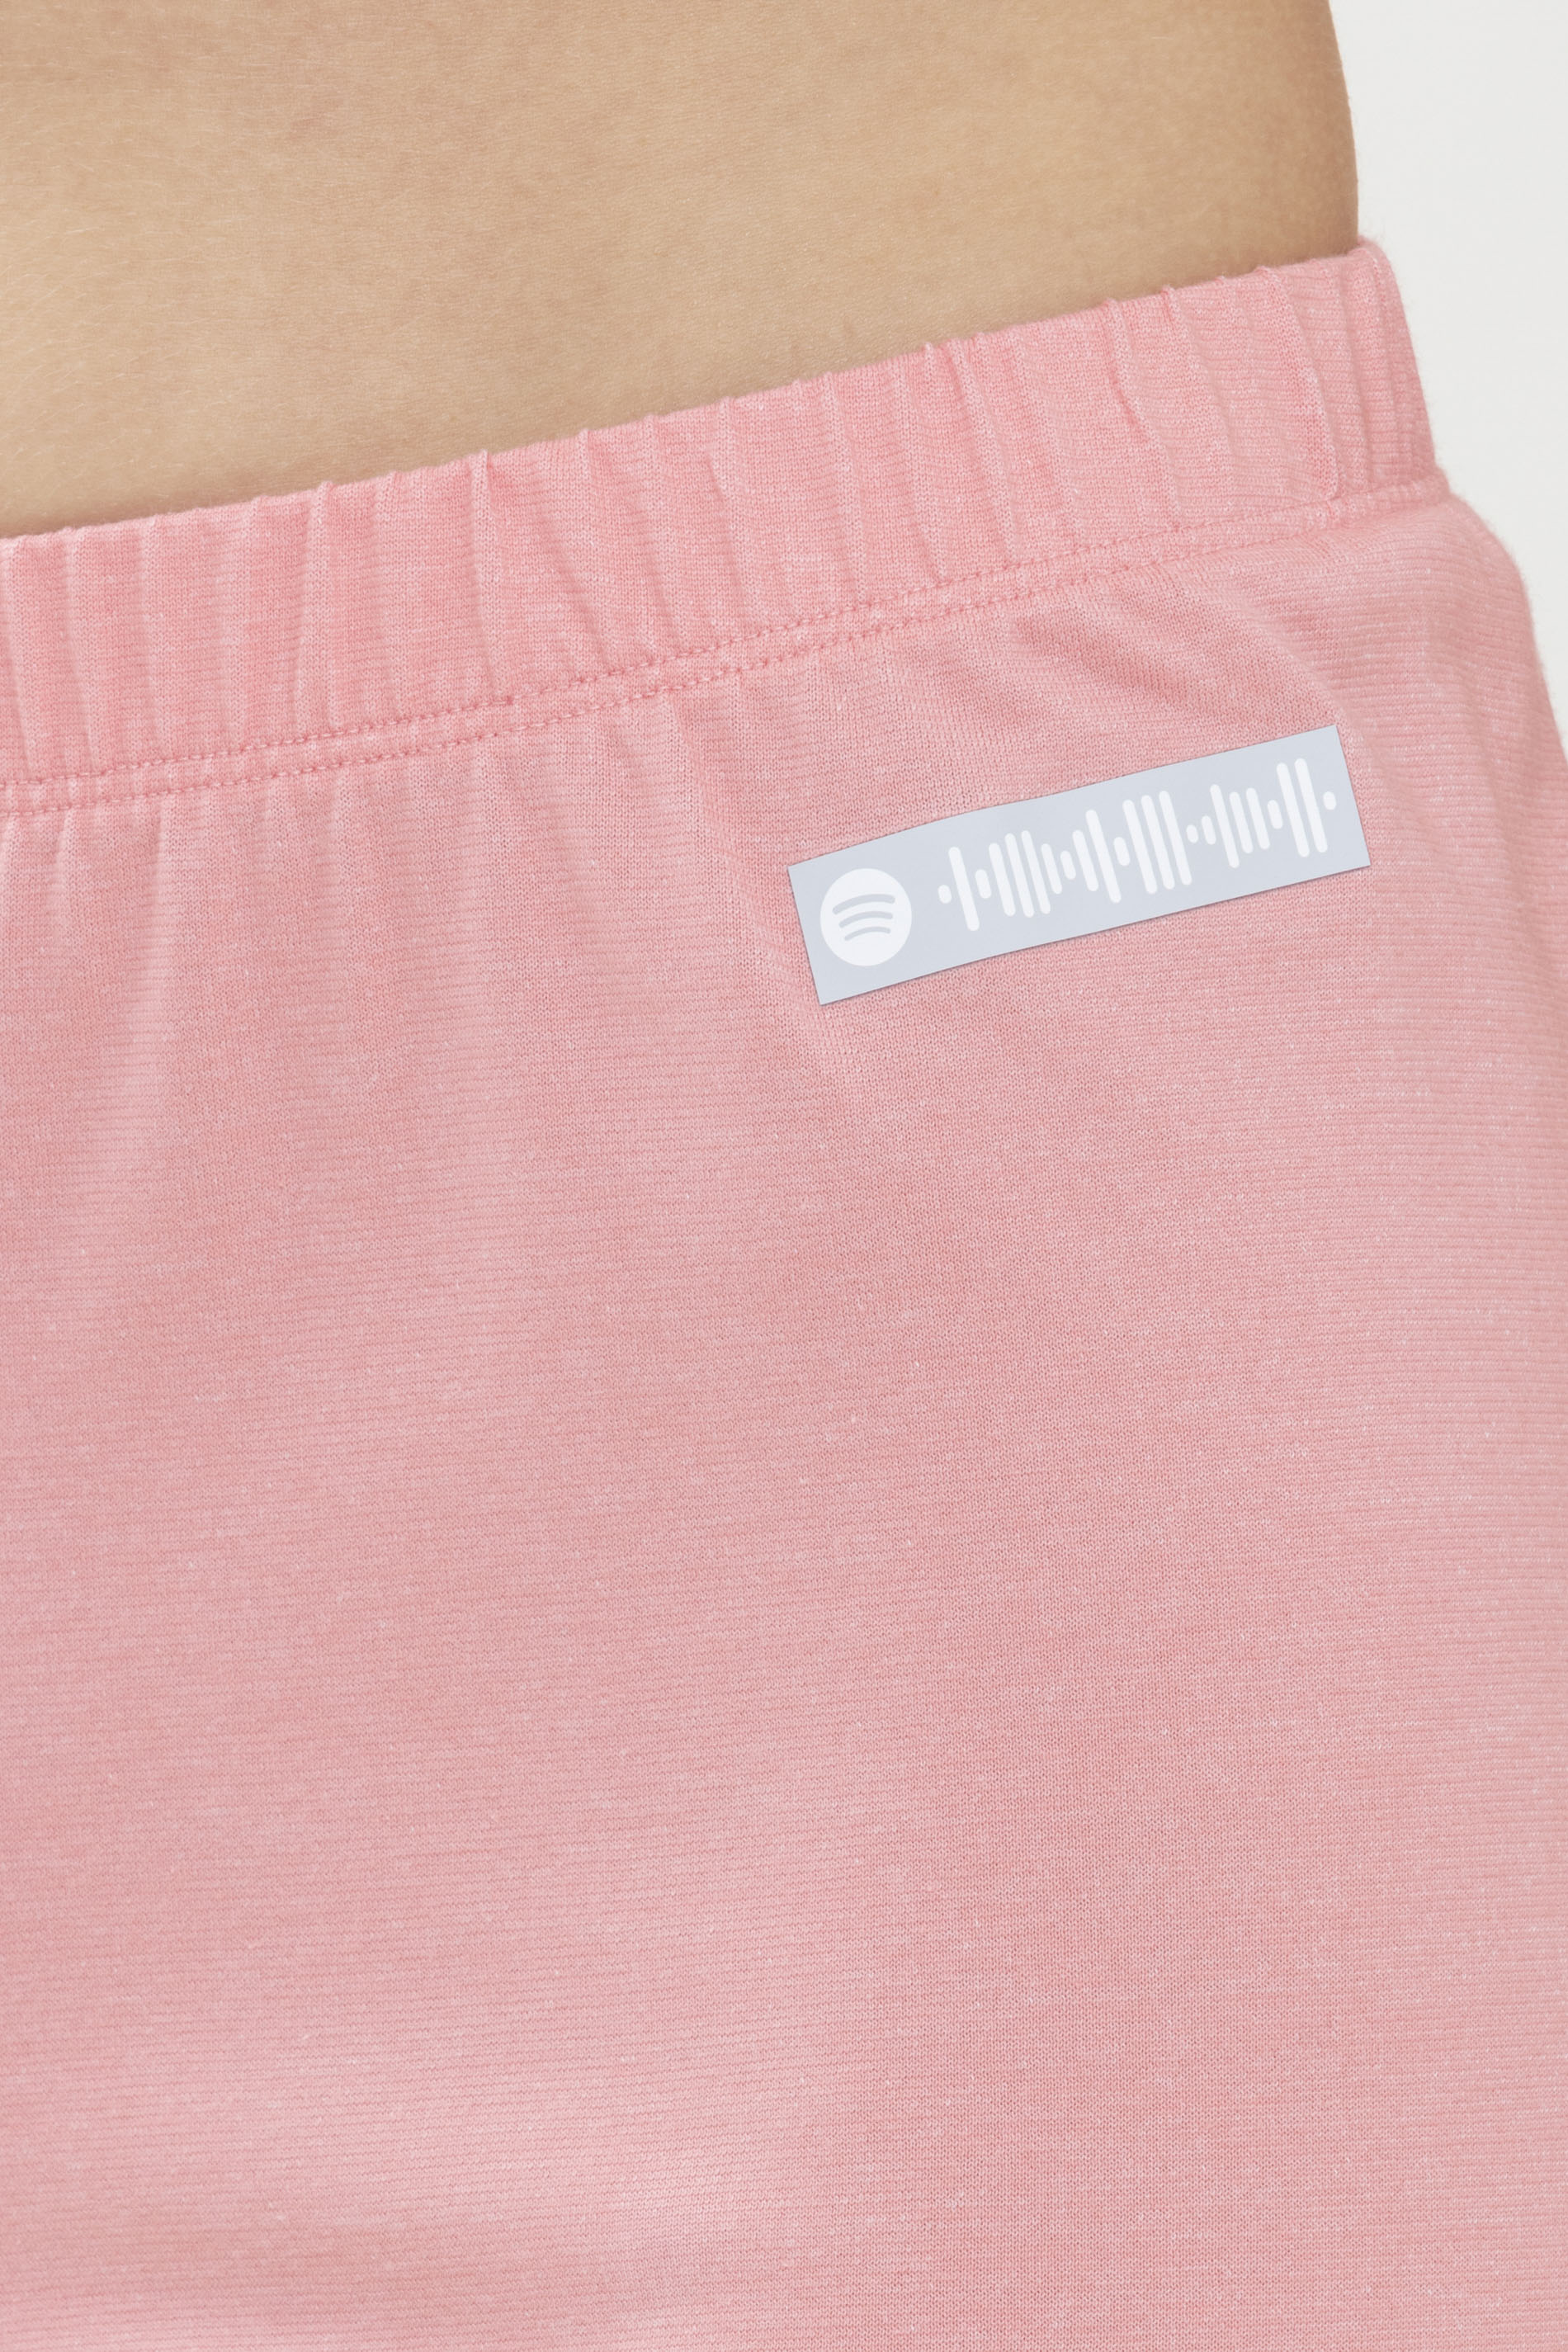 Hose 3/4 Länge Powder Pink Serie Zzzleepwear Detailansicht 01 | mey®